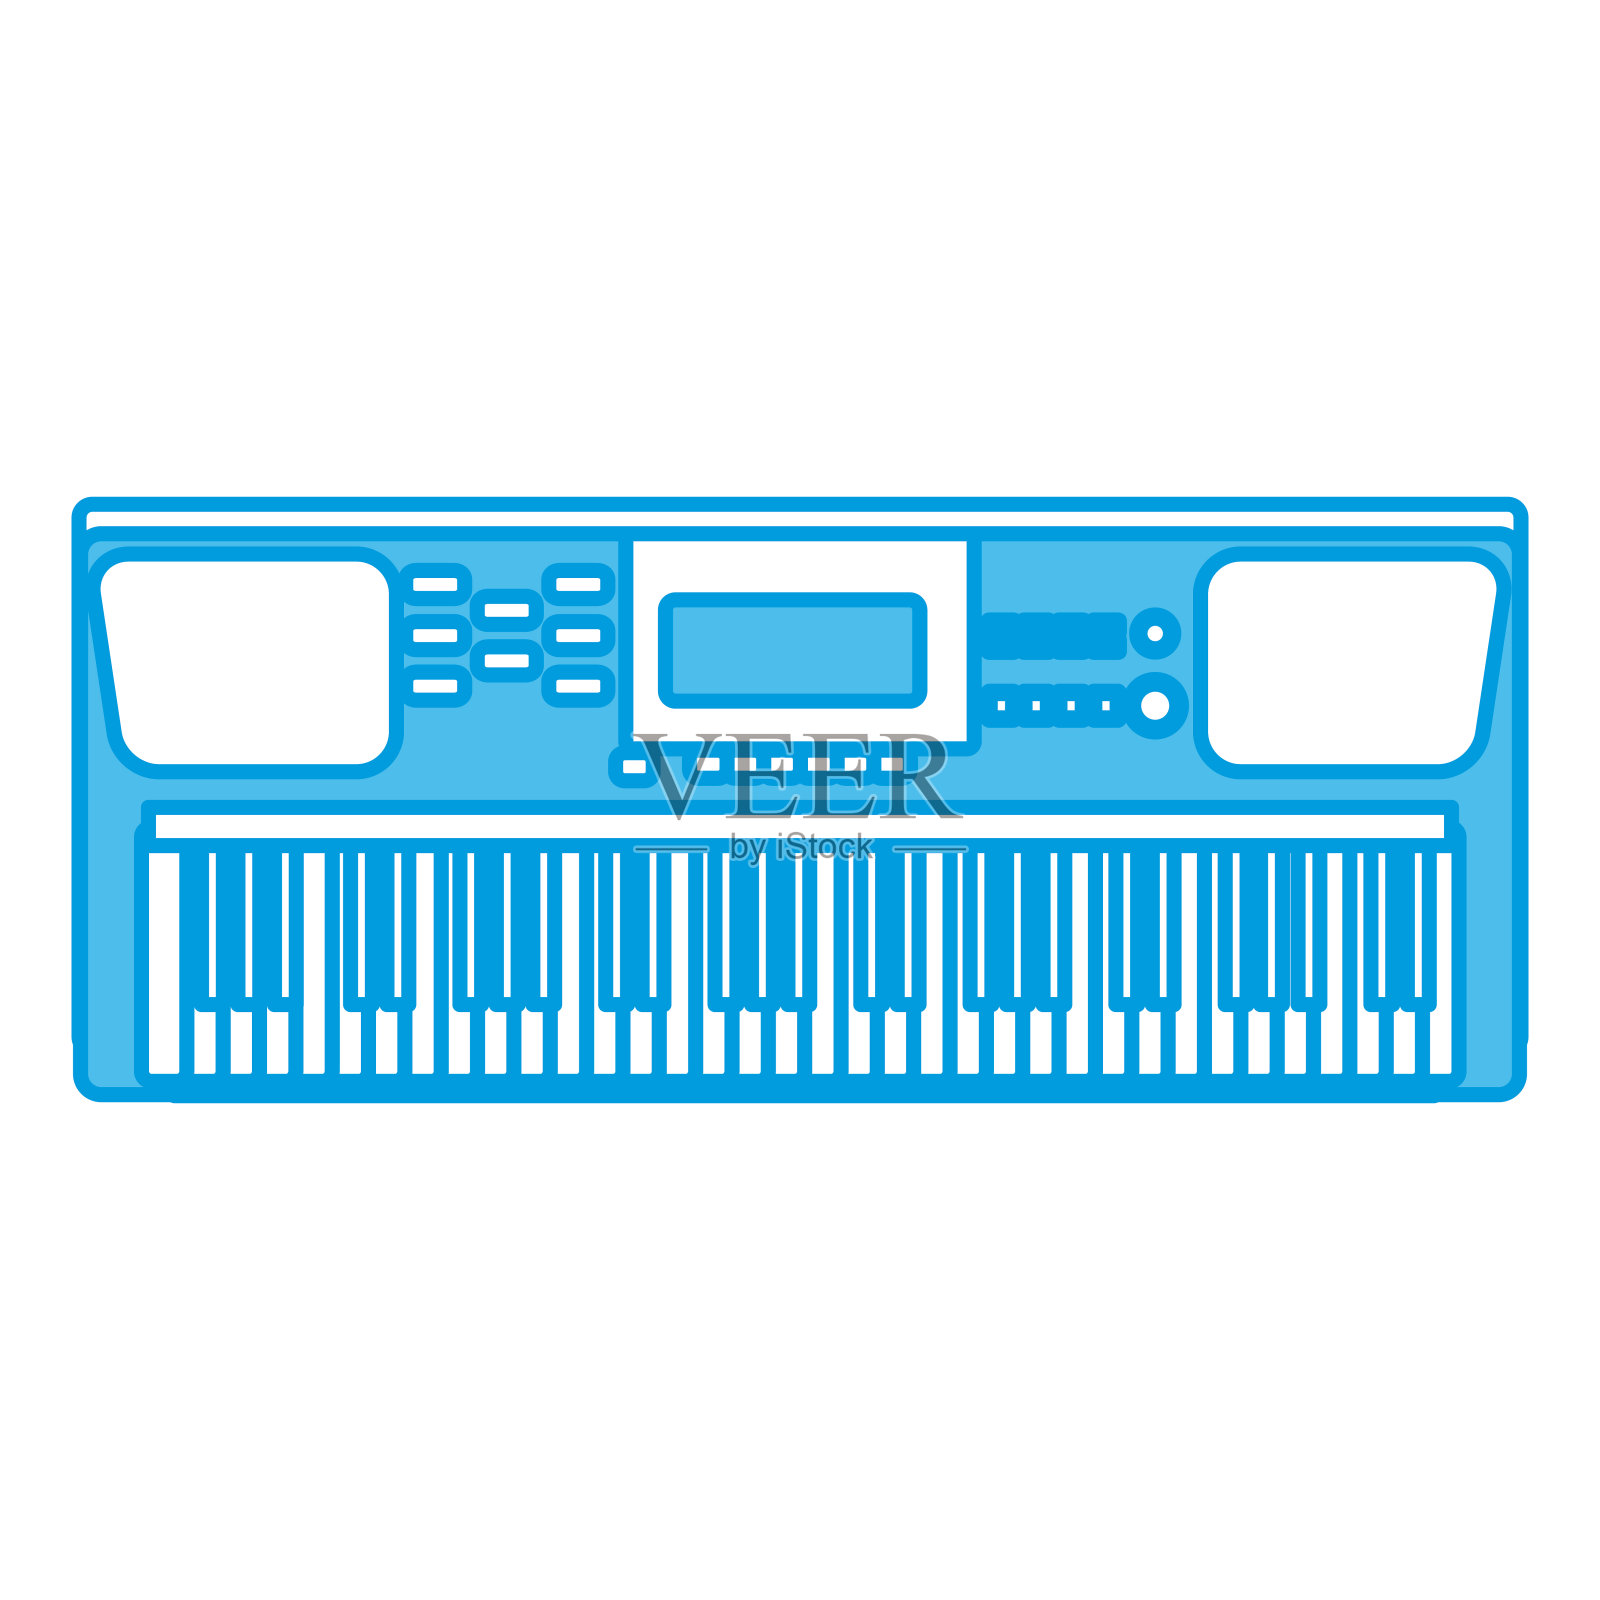 音乐键盘乐器设计元素图片